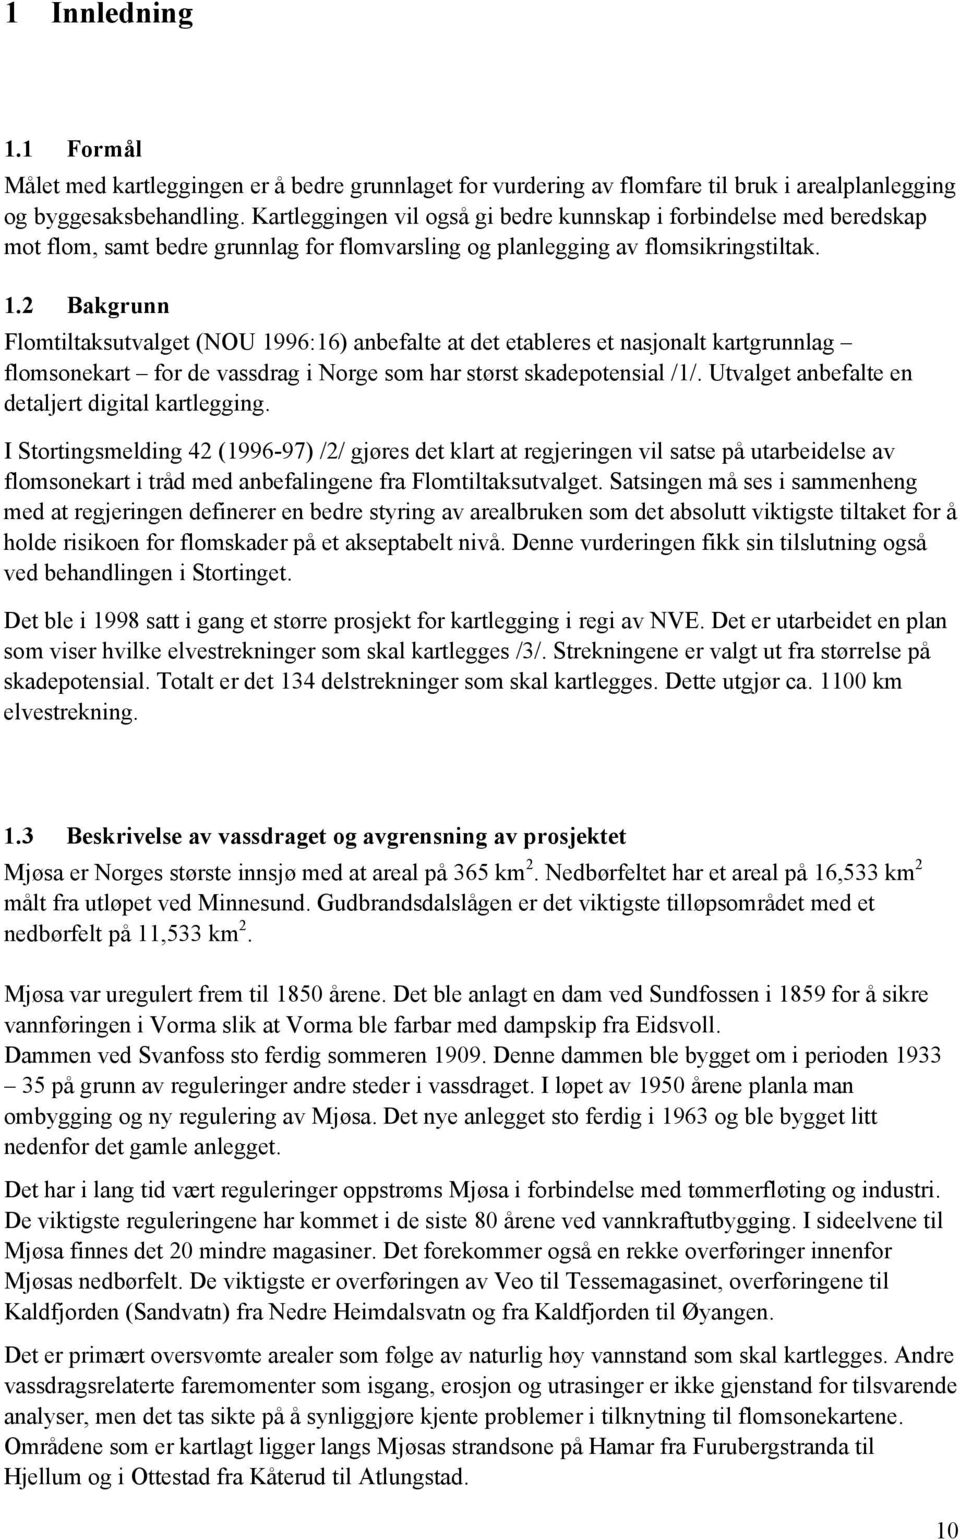 2 Bakgrunn Flomtiltaksutvalget (NOU 1996:16) anbefalte at det etableres et nasjonalt kartgrunnlag flomsonekart for de vassdrag i Norge som har størst skadepotensial /1/.